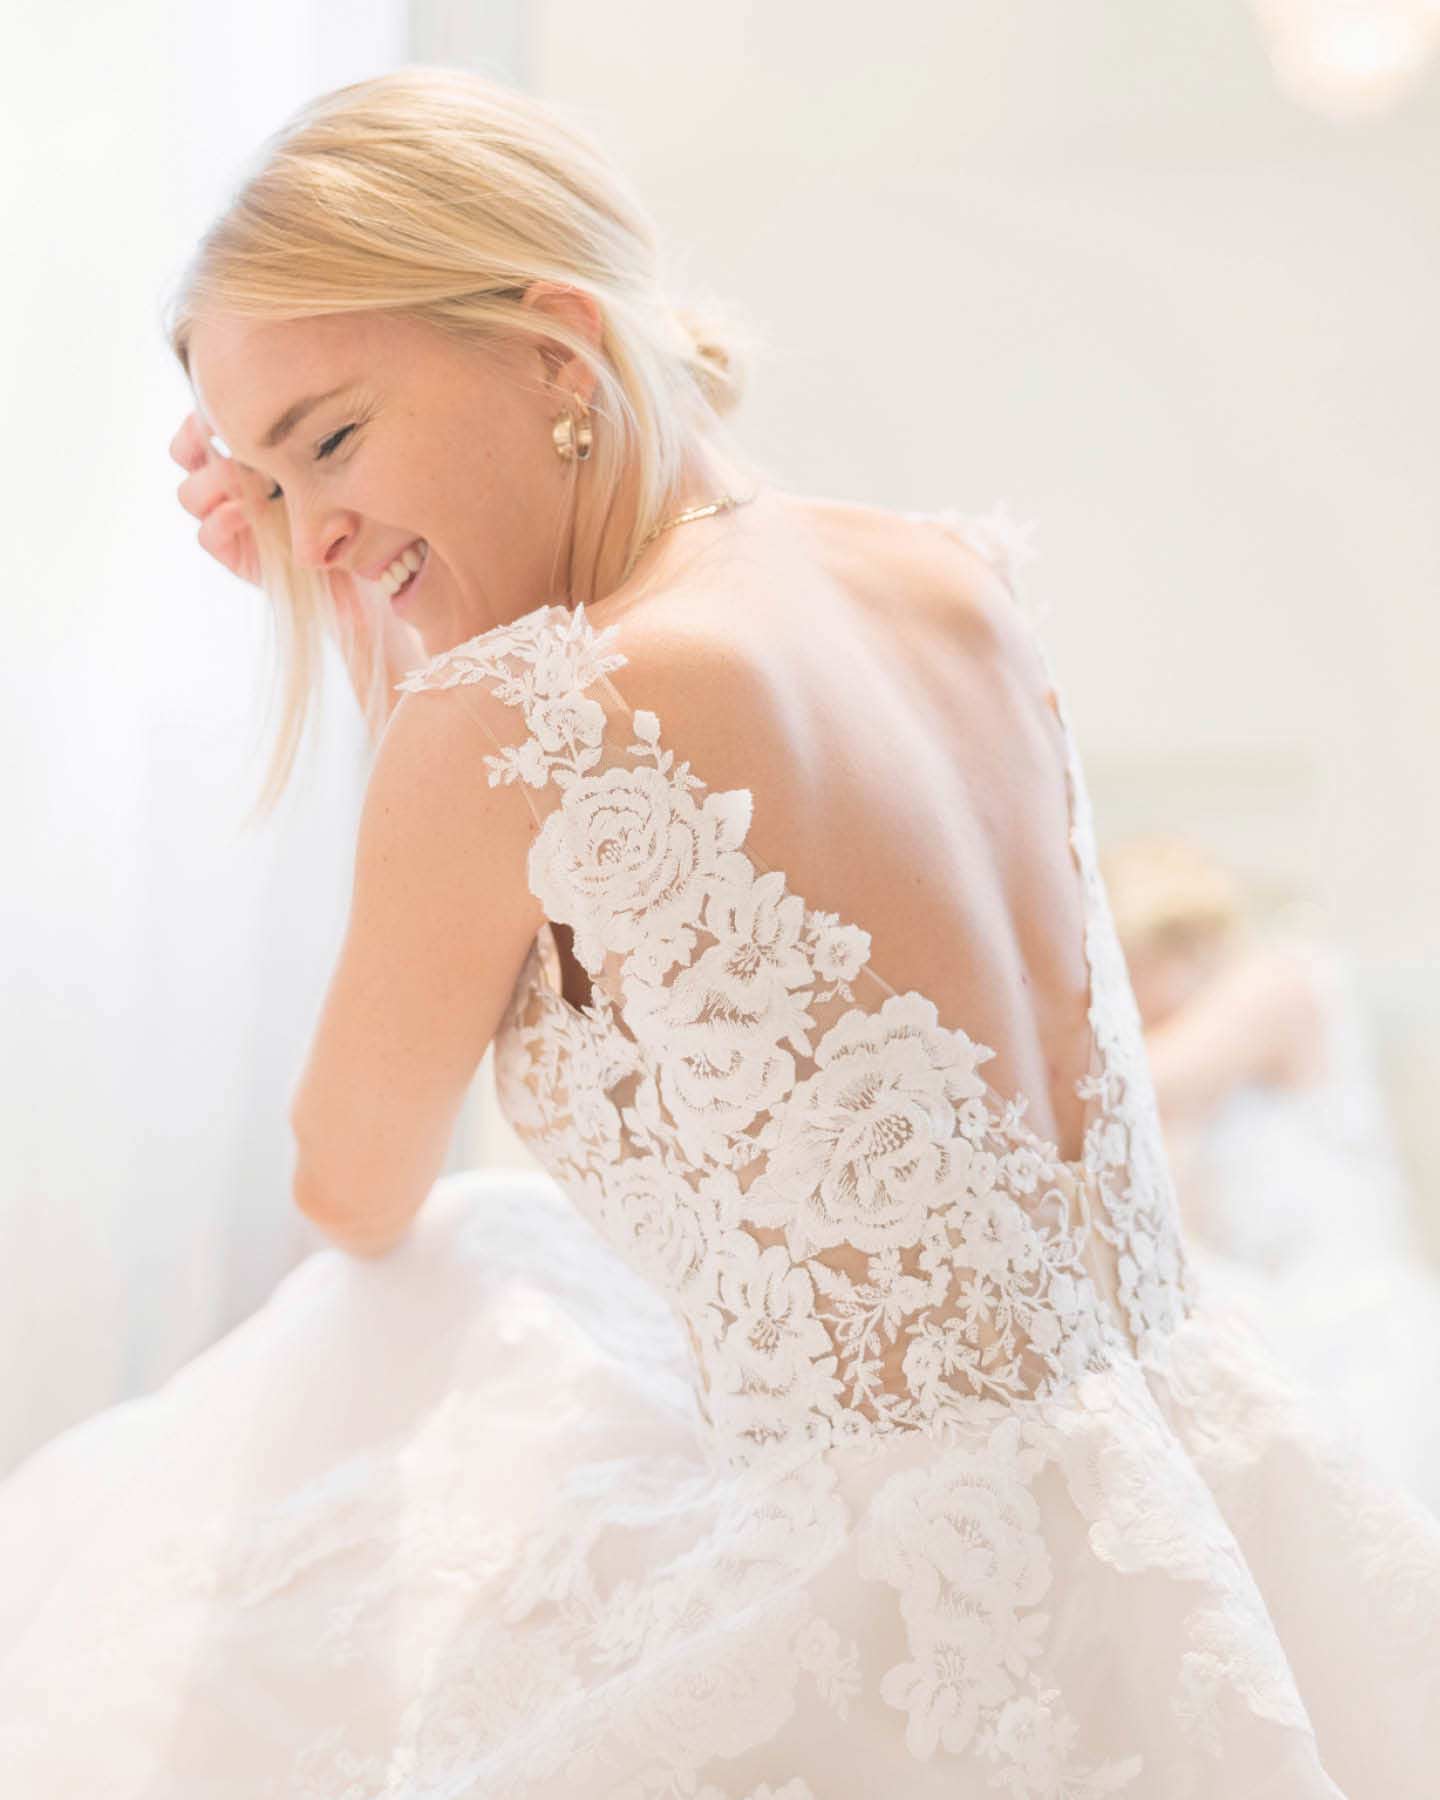 Braut lacht glücklich und zeigt den besonderen Rückenausschnitt mit Spitze ihres Brautkleides.